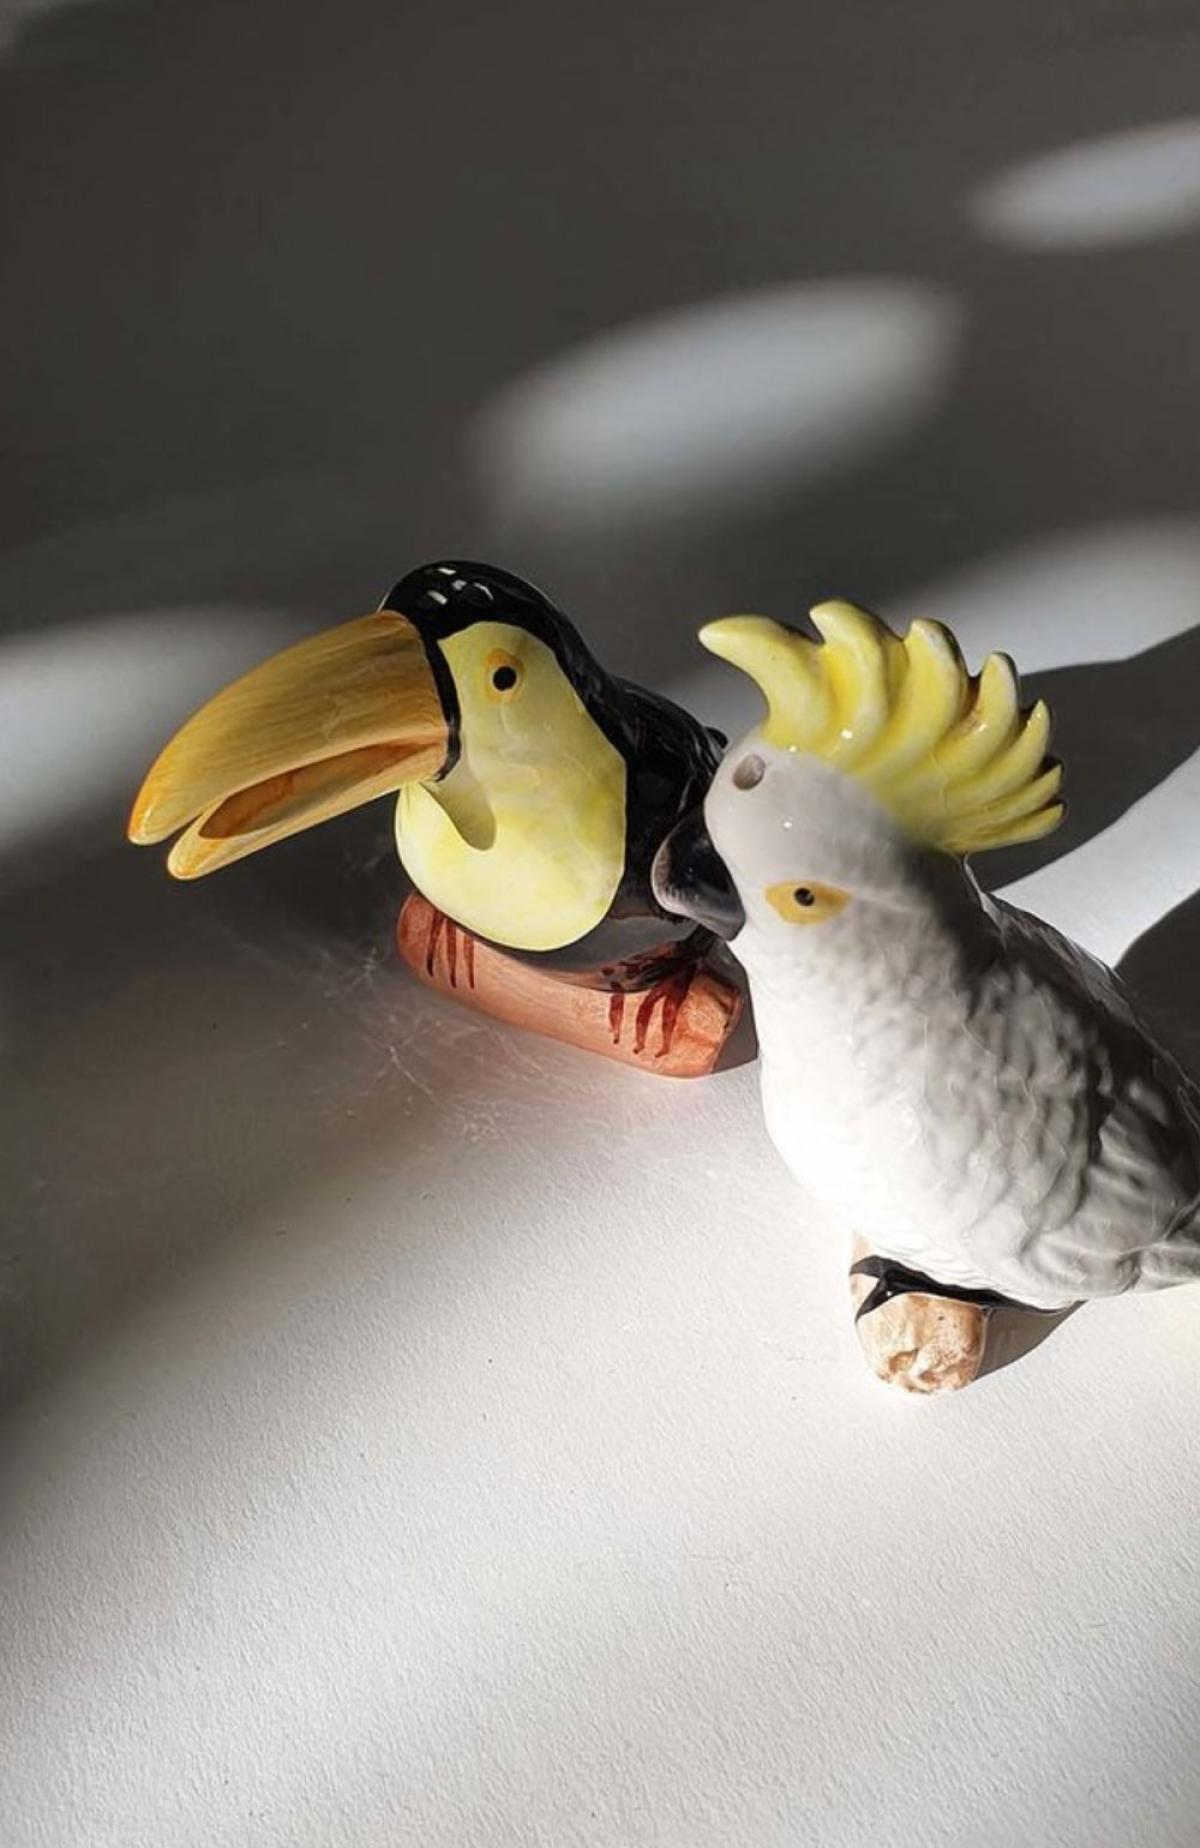 Vintage peper- en zoutsetje met exotische vogels